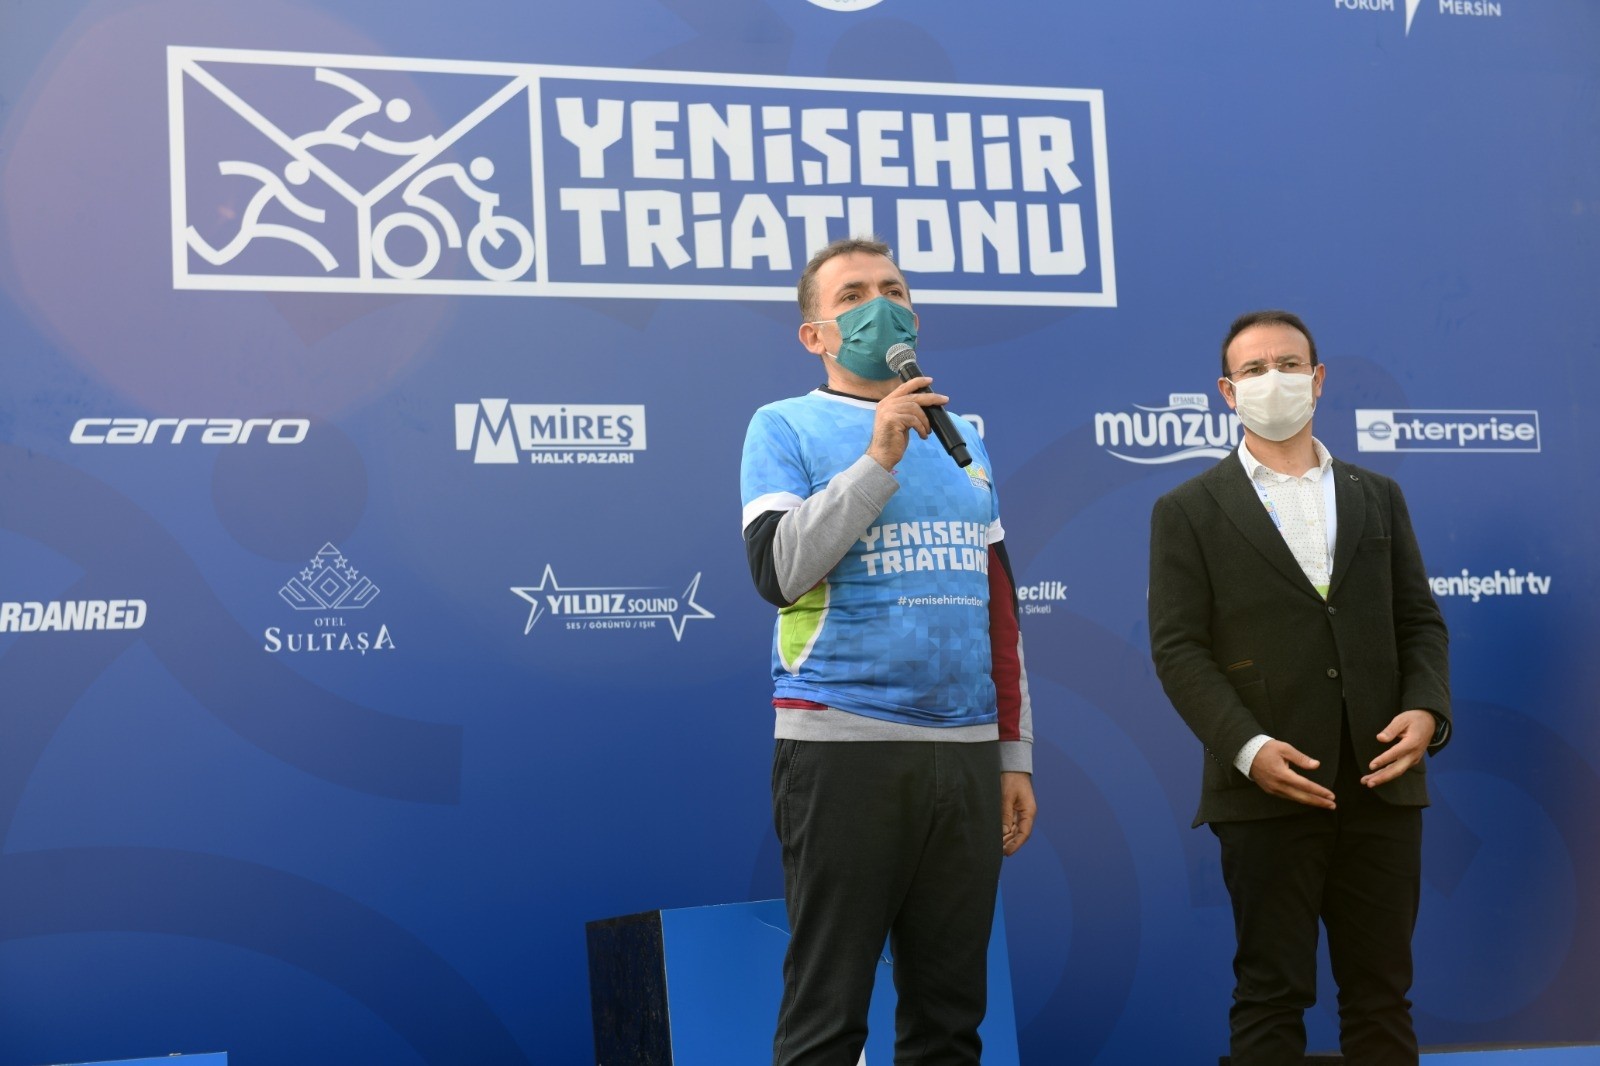 Mersin Yenişehir'de triatlon heyecanı yaşandı 